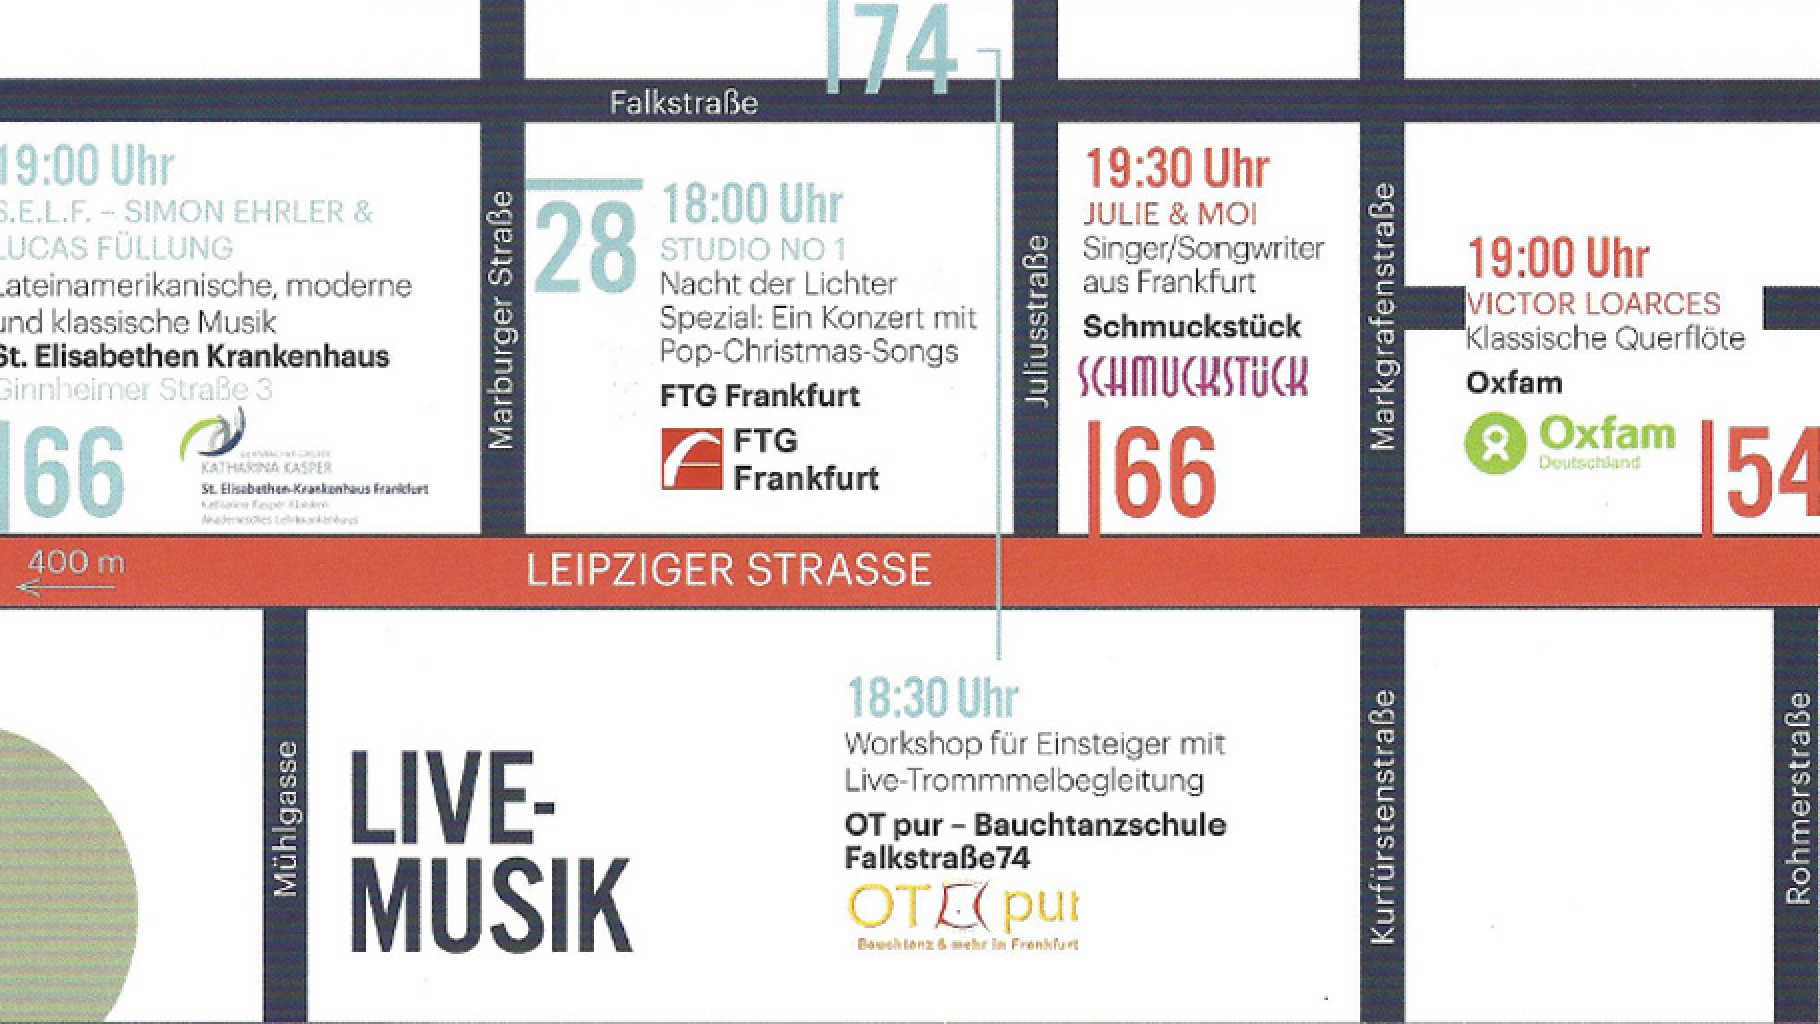 Oxfam Fashionshop Frankfurt Bockenheim: Nacht der Lichter 2018 mit Live-Musik